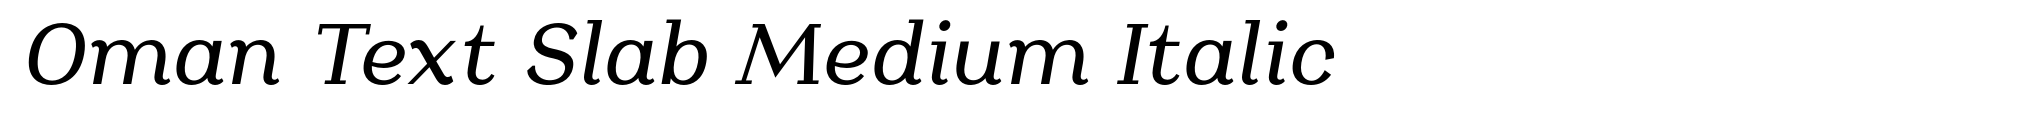 Oman Text Slab Medium Italic image